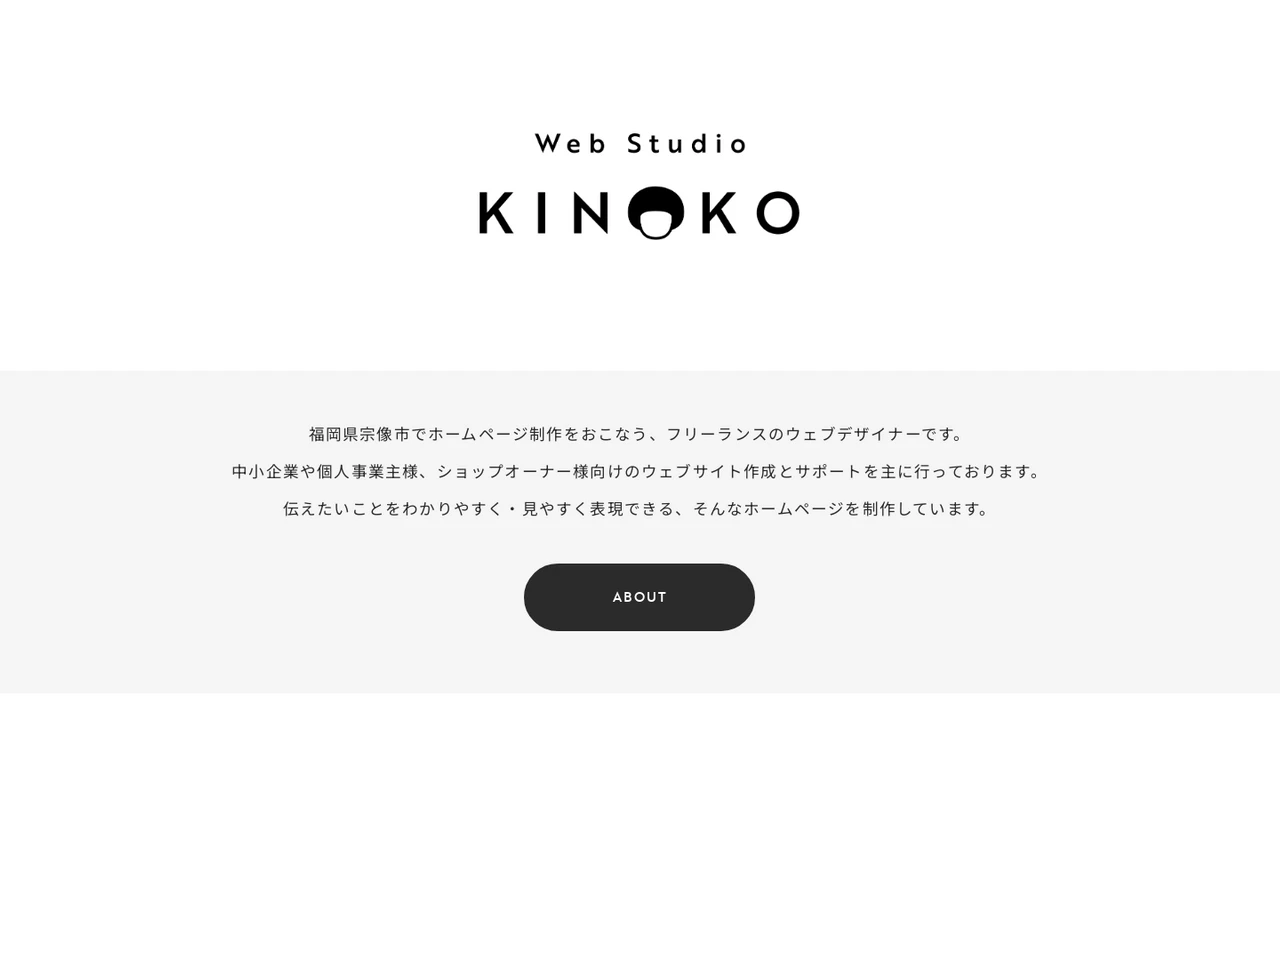 Web Studio KINOKO